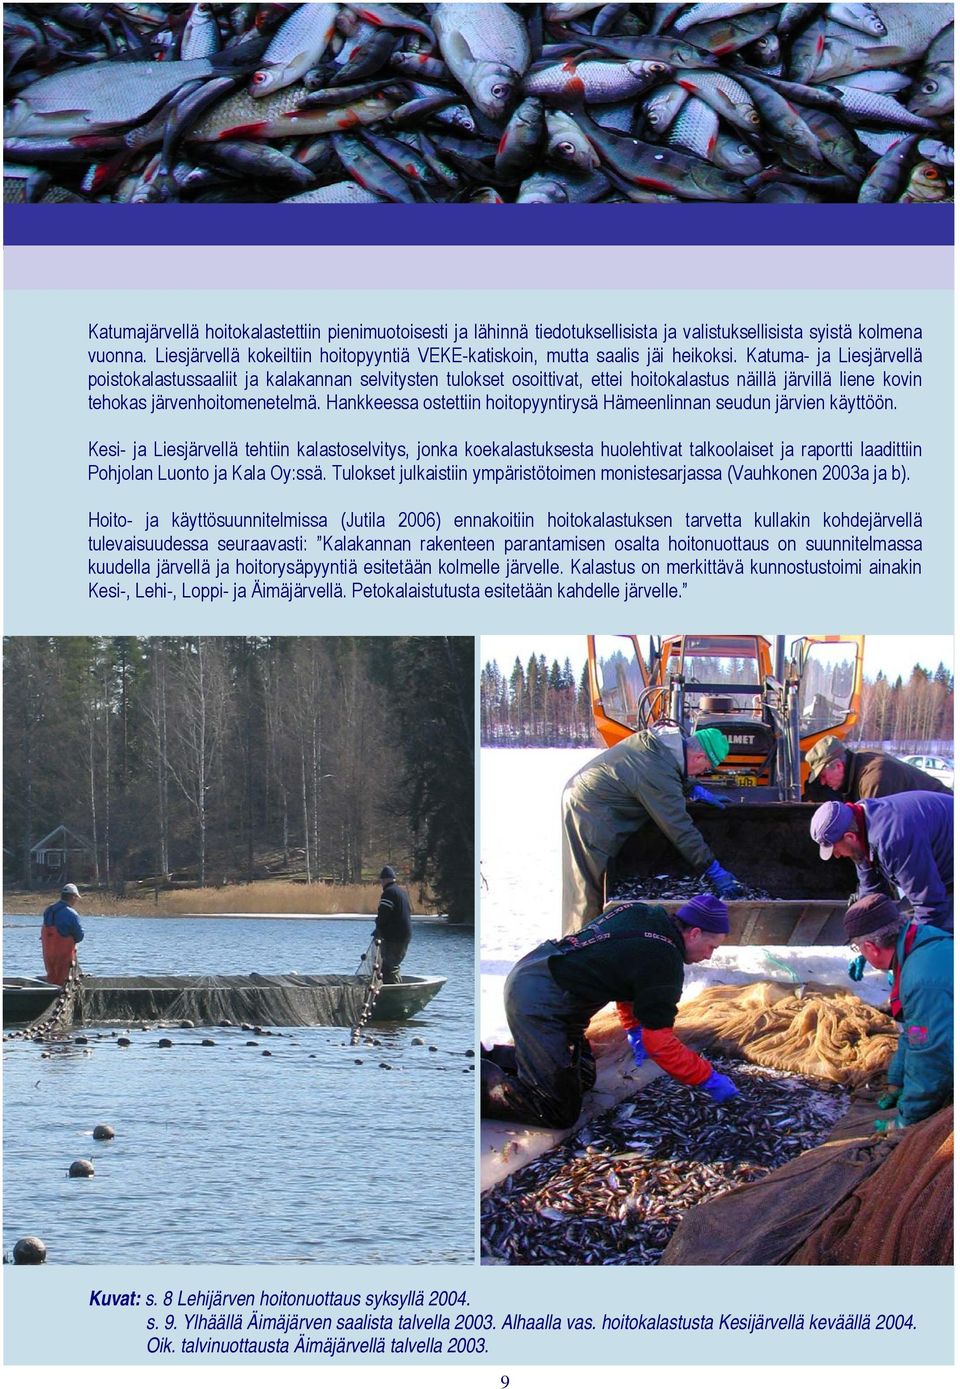 Katuma- ja Liesjärvellä poistokalastussaaliit ja kalakannan selvitysten tulokset osoittivat, ettei hoitokalastus näillä järvillä liene kovin tehokas järvenhoitomenetelmä.